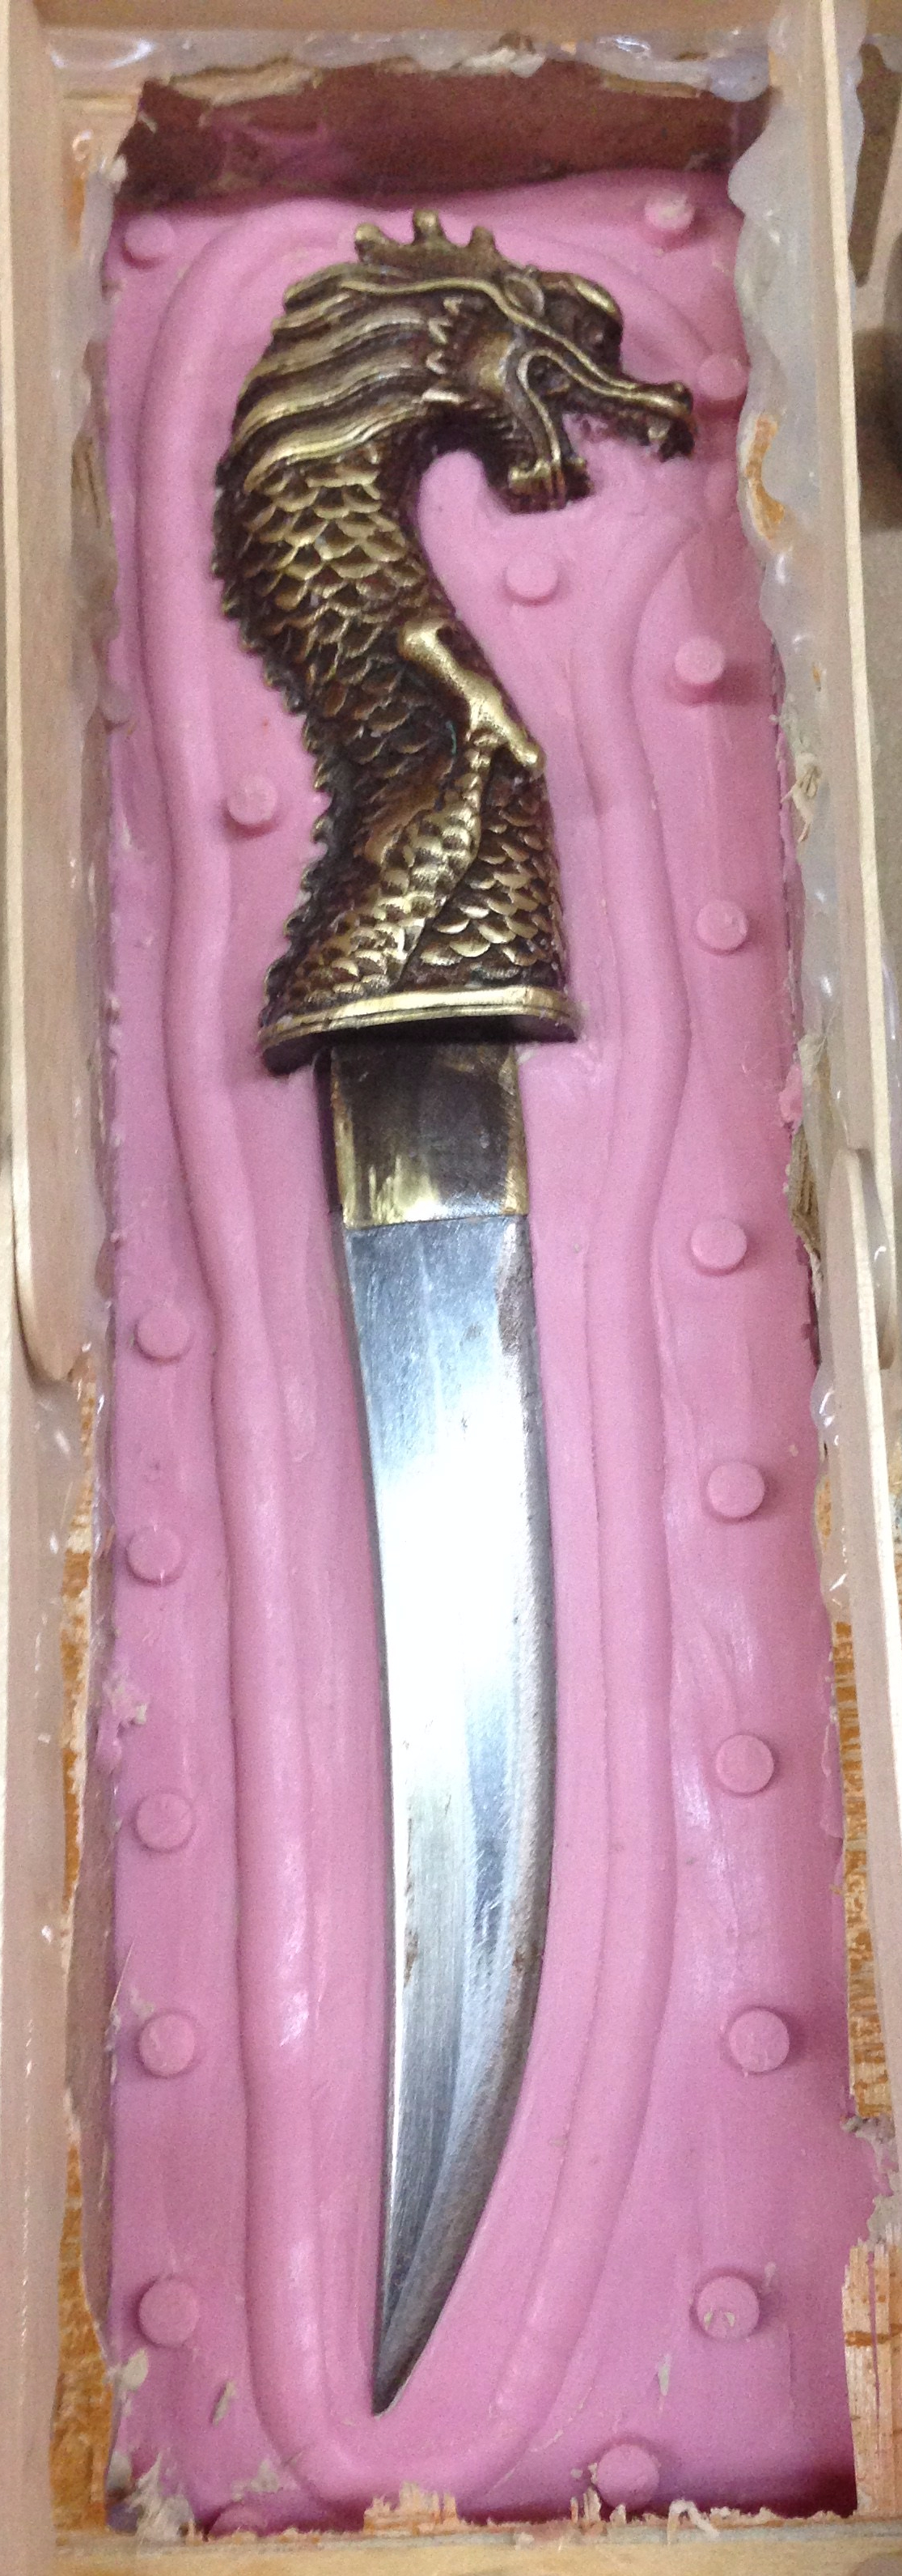 Antique prop knife